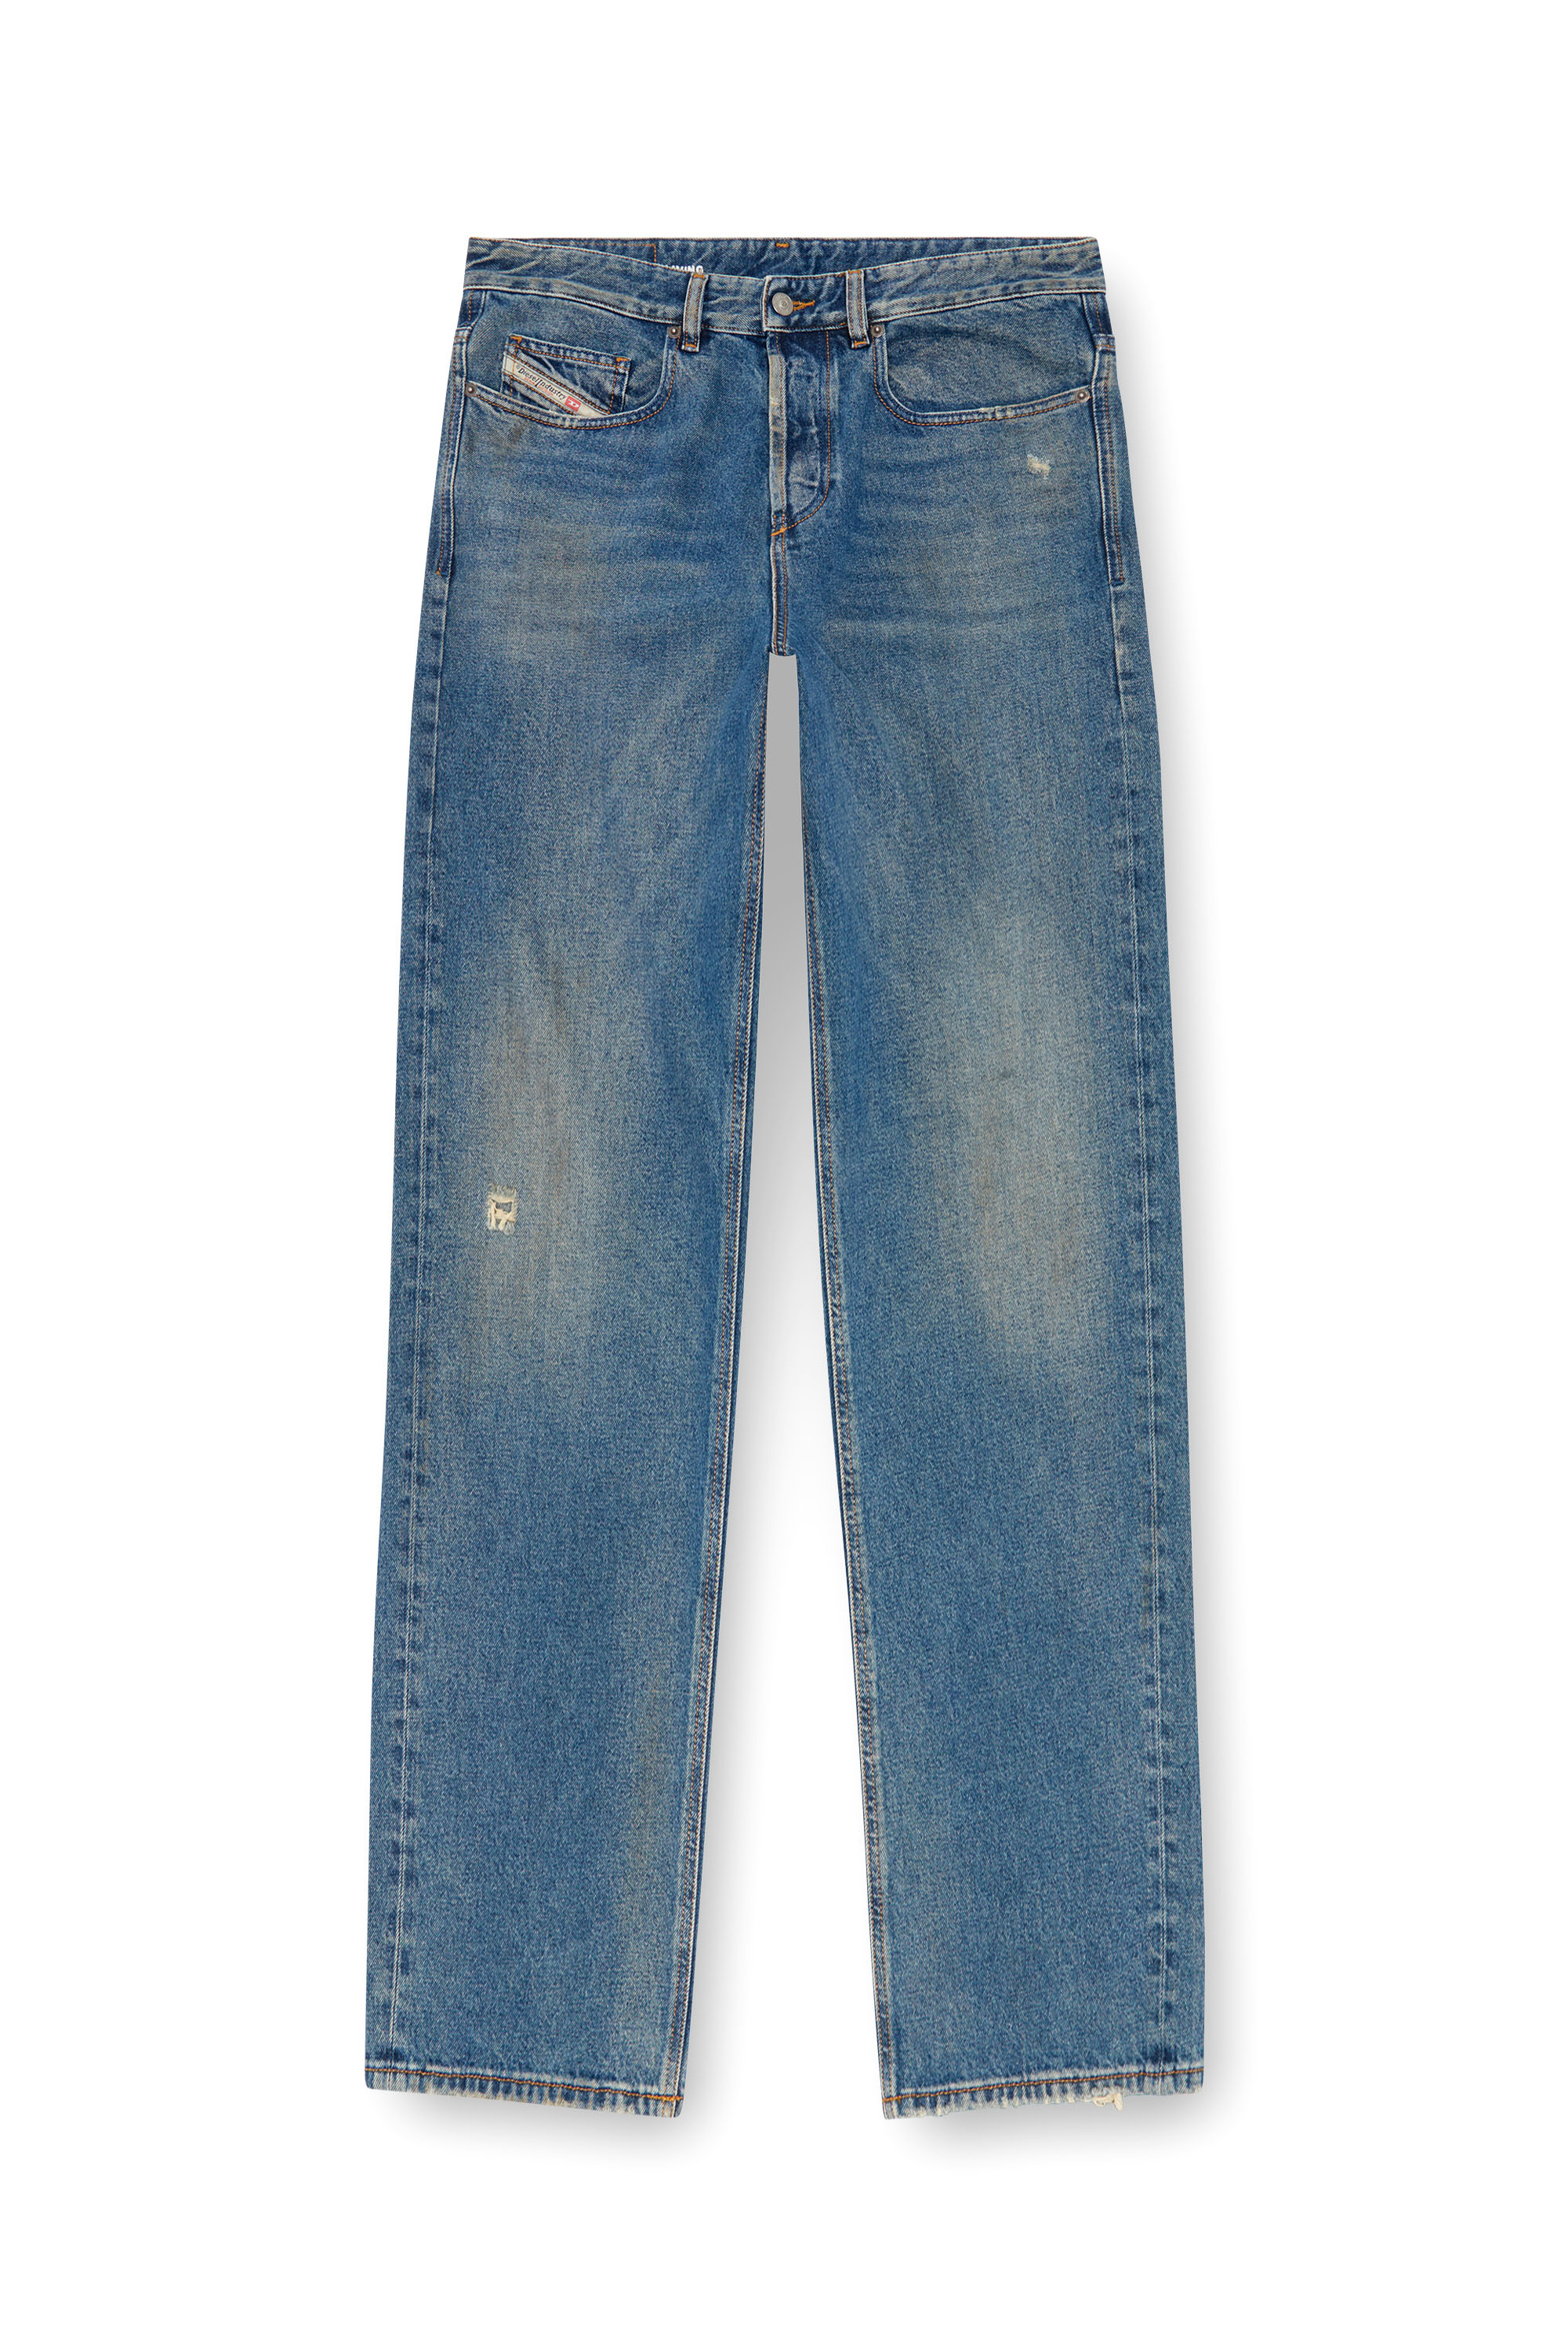 Diesel - Man Straight Jeans 2001 D-Macro 09J79, Medium blue - Image 5